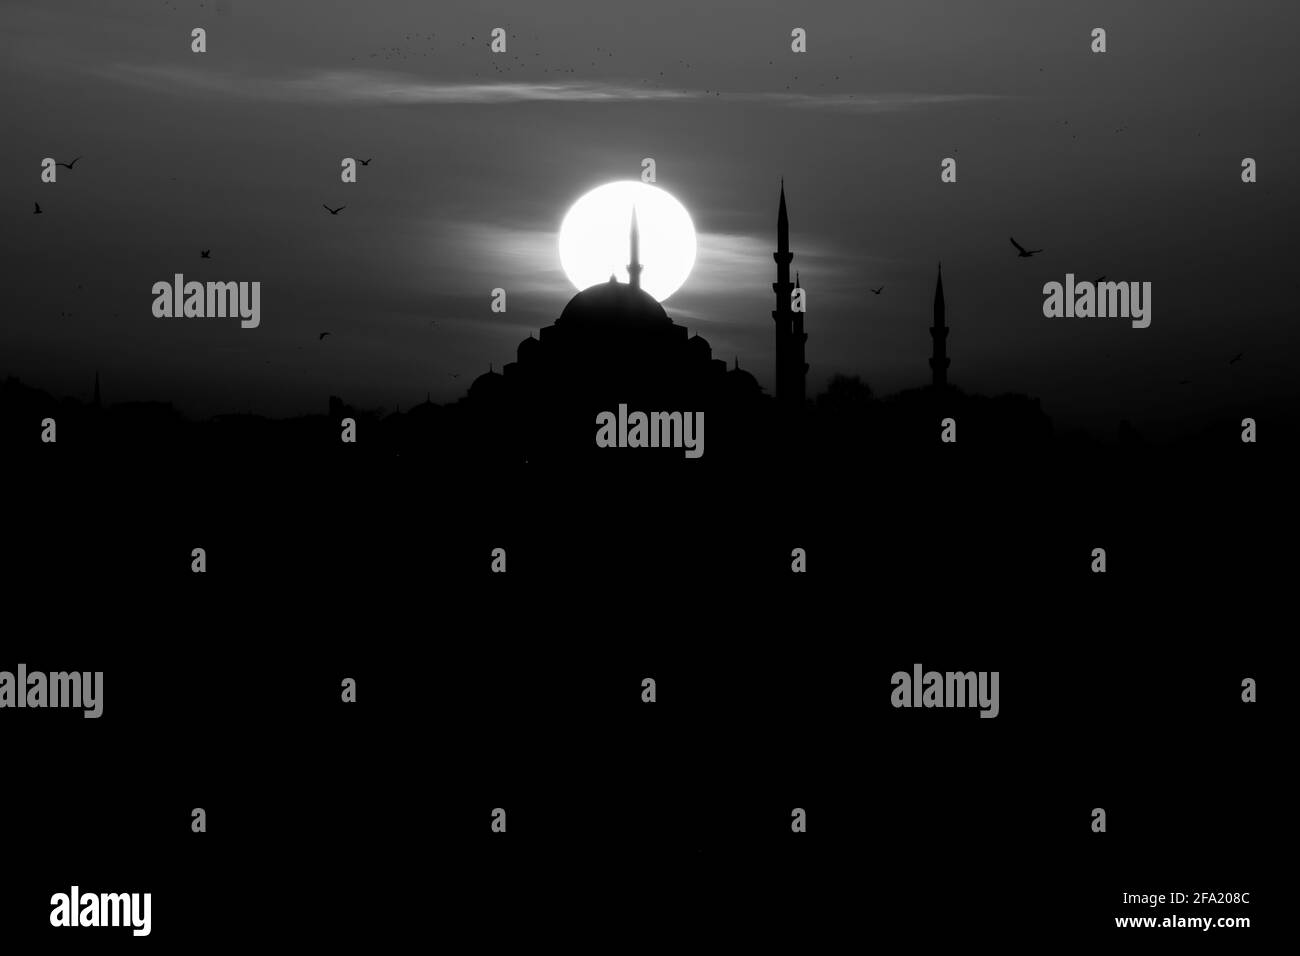 Graustufen-Foto der Suleymaniye Moschee bei Sonnenuntergang. Silhouette der Moschee mit Sonne. islamisches Hintergrundbild. Ramadan, kandil und iftar Hintergrund. Stockfoto